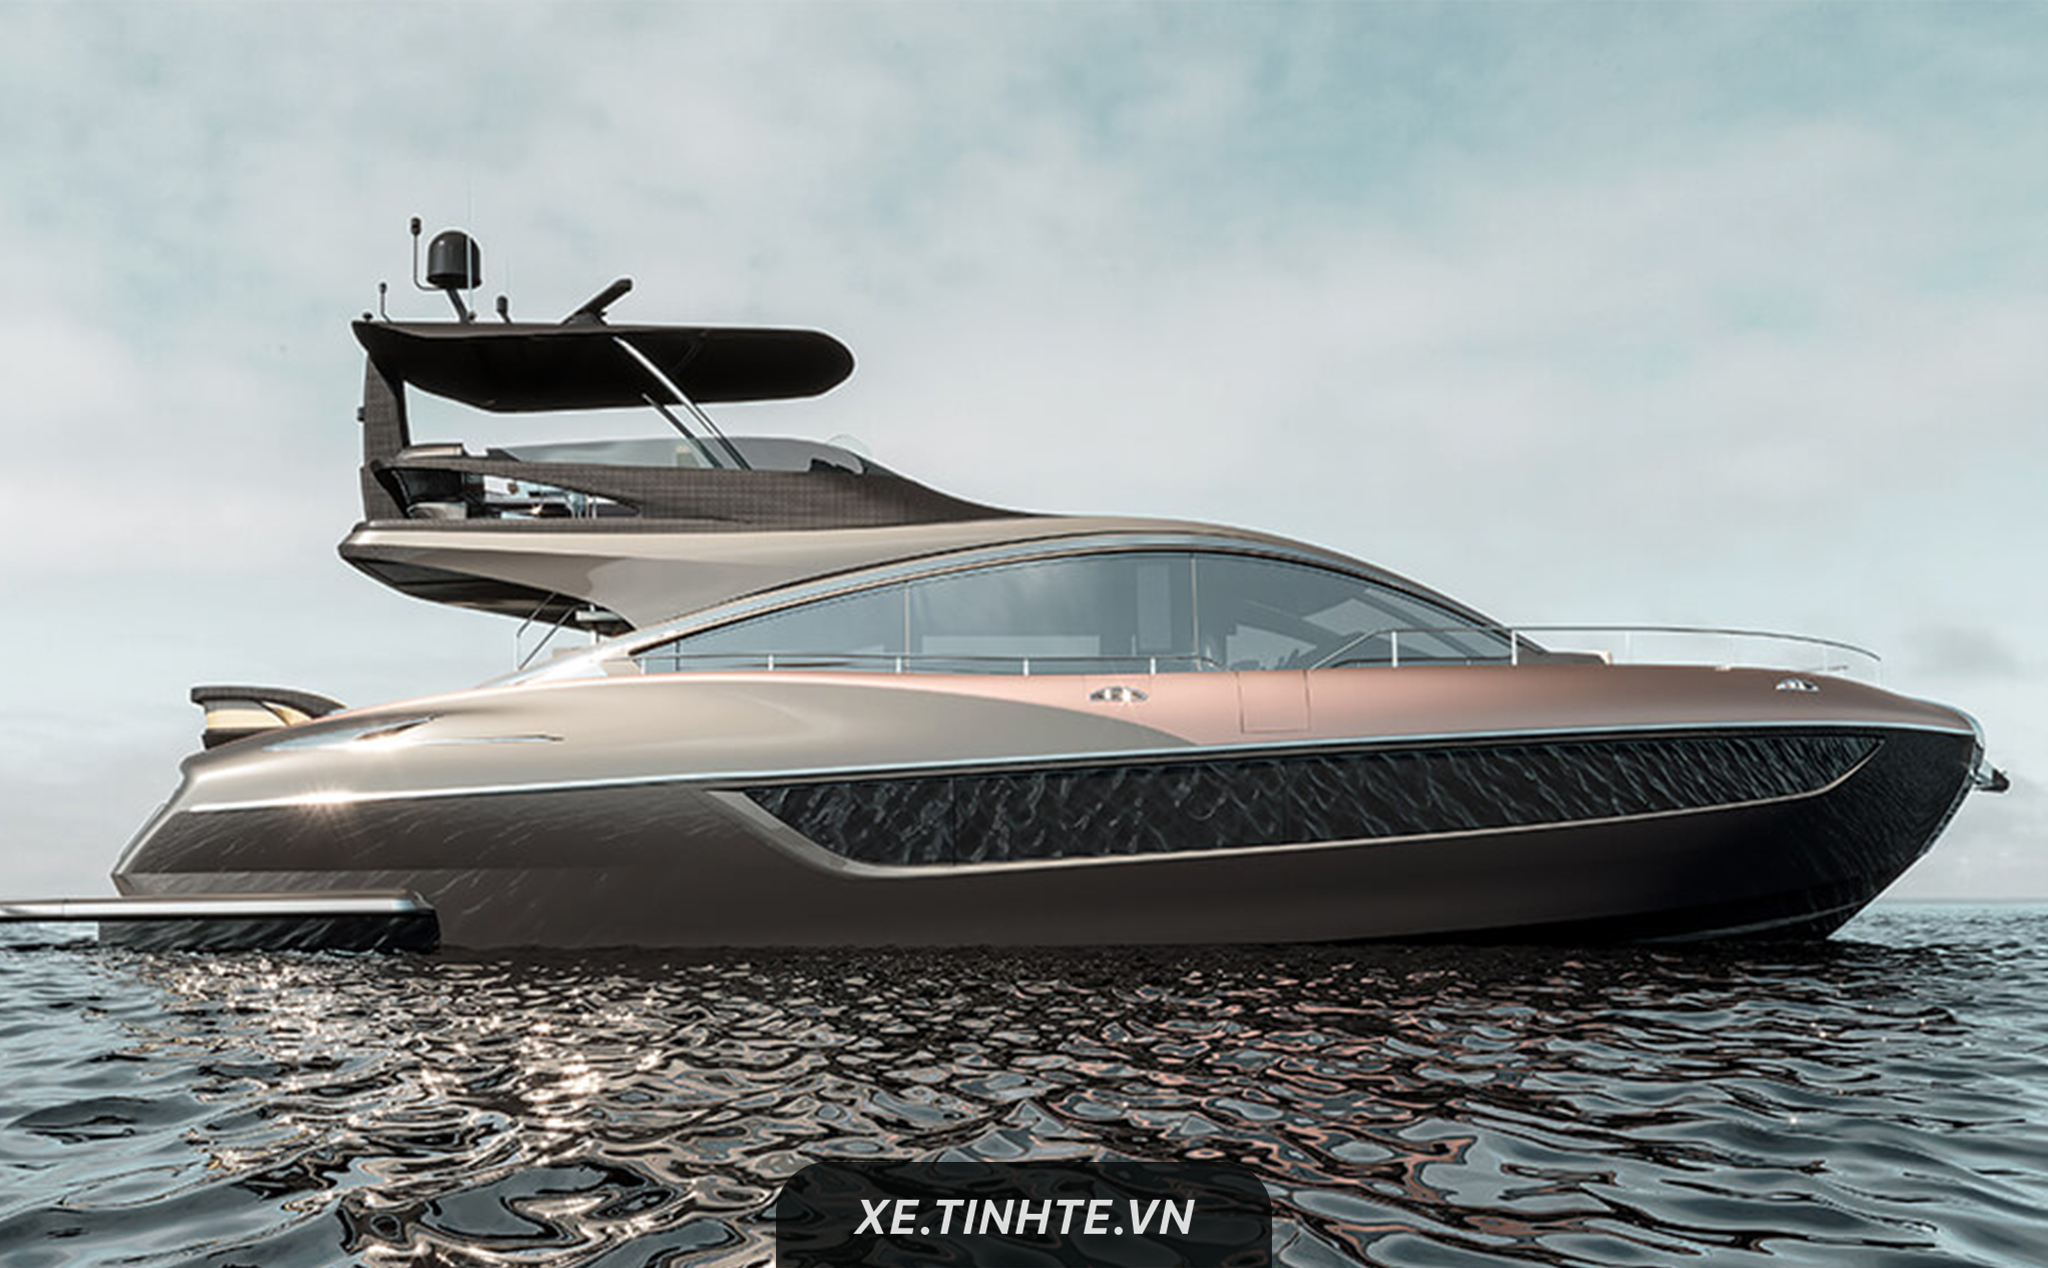 Lexus giới thiệu mẫu du thuyền thế hệ mới LY 650, dự kiến sẽ ra mắt năm 2019